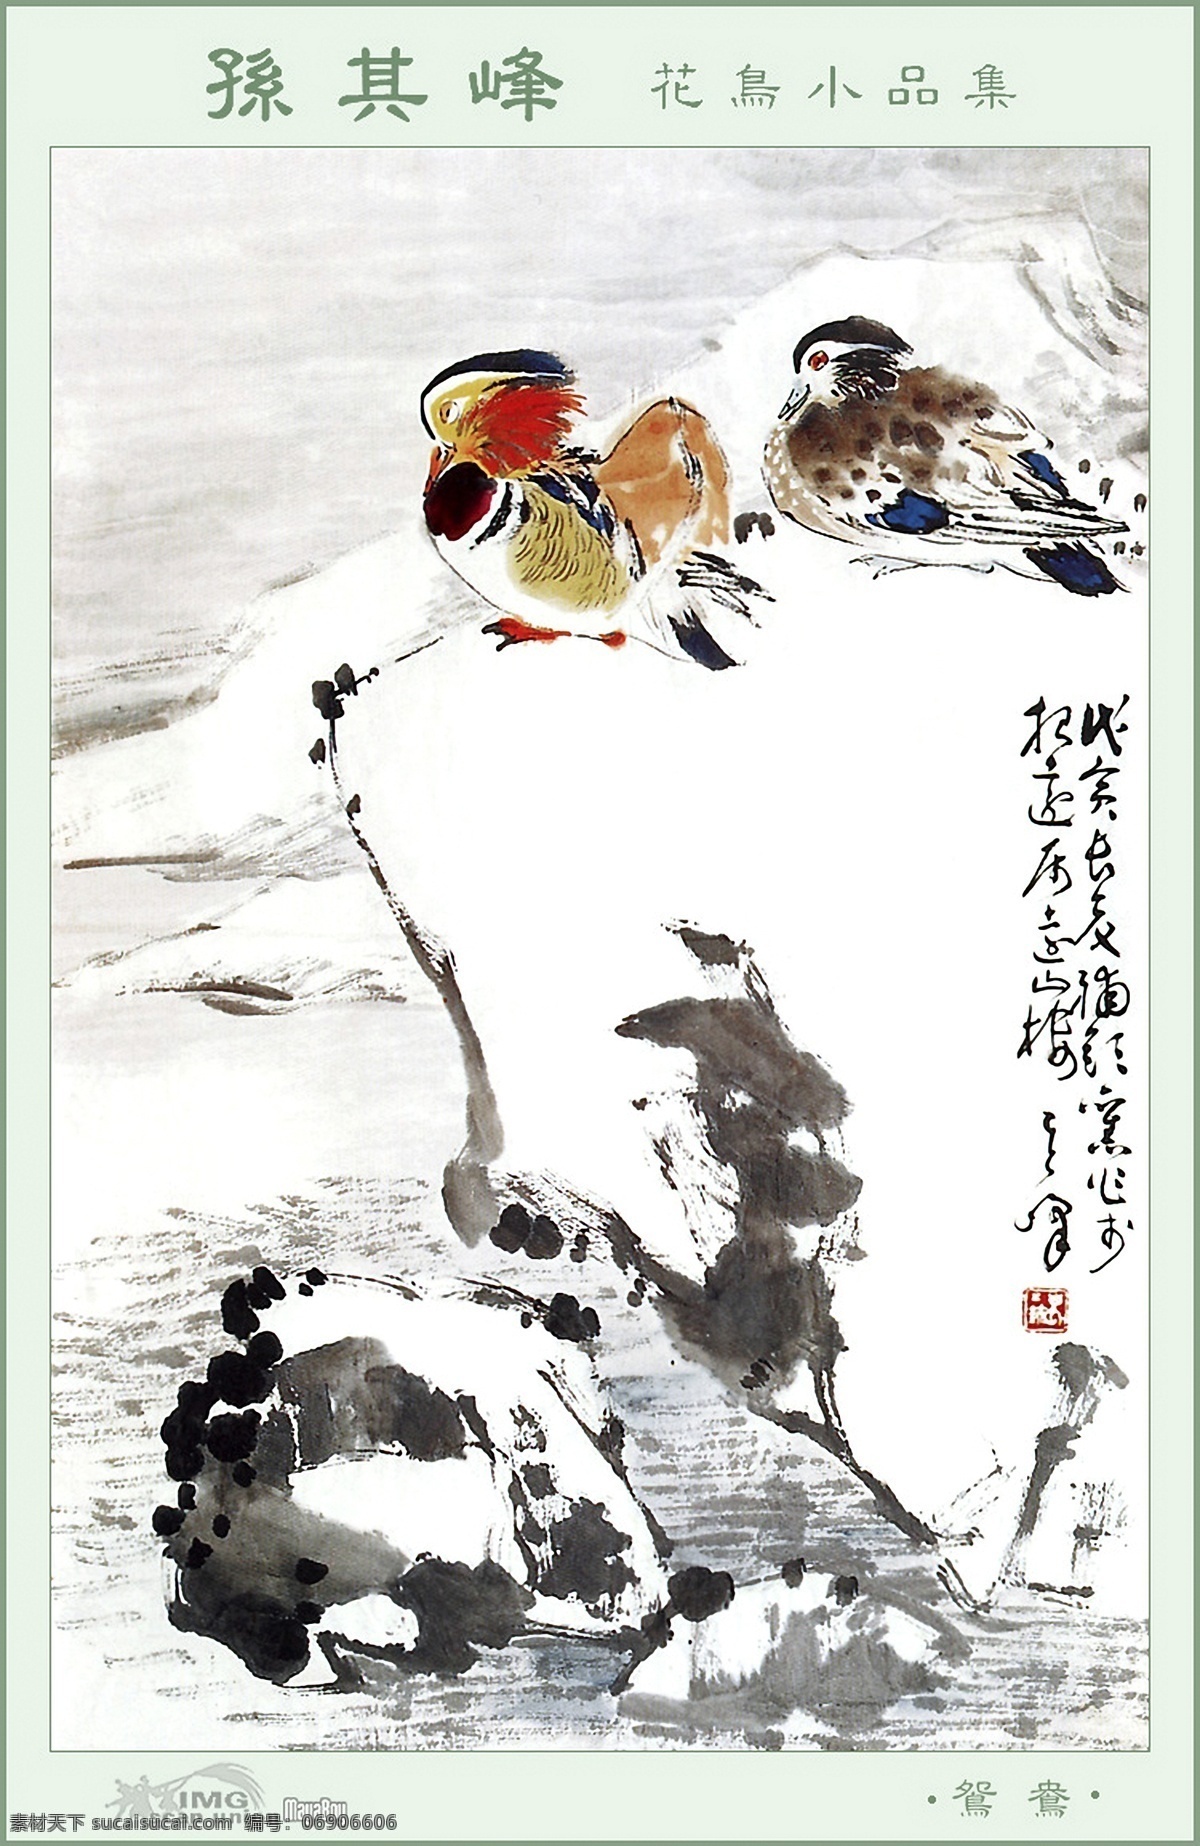 文化 艺术 花鸟画 中国风 植物 鲜花 鸟 伶俐 水墨画 书画文字 文化艺术 白色